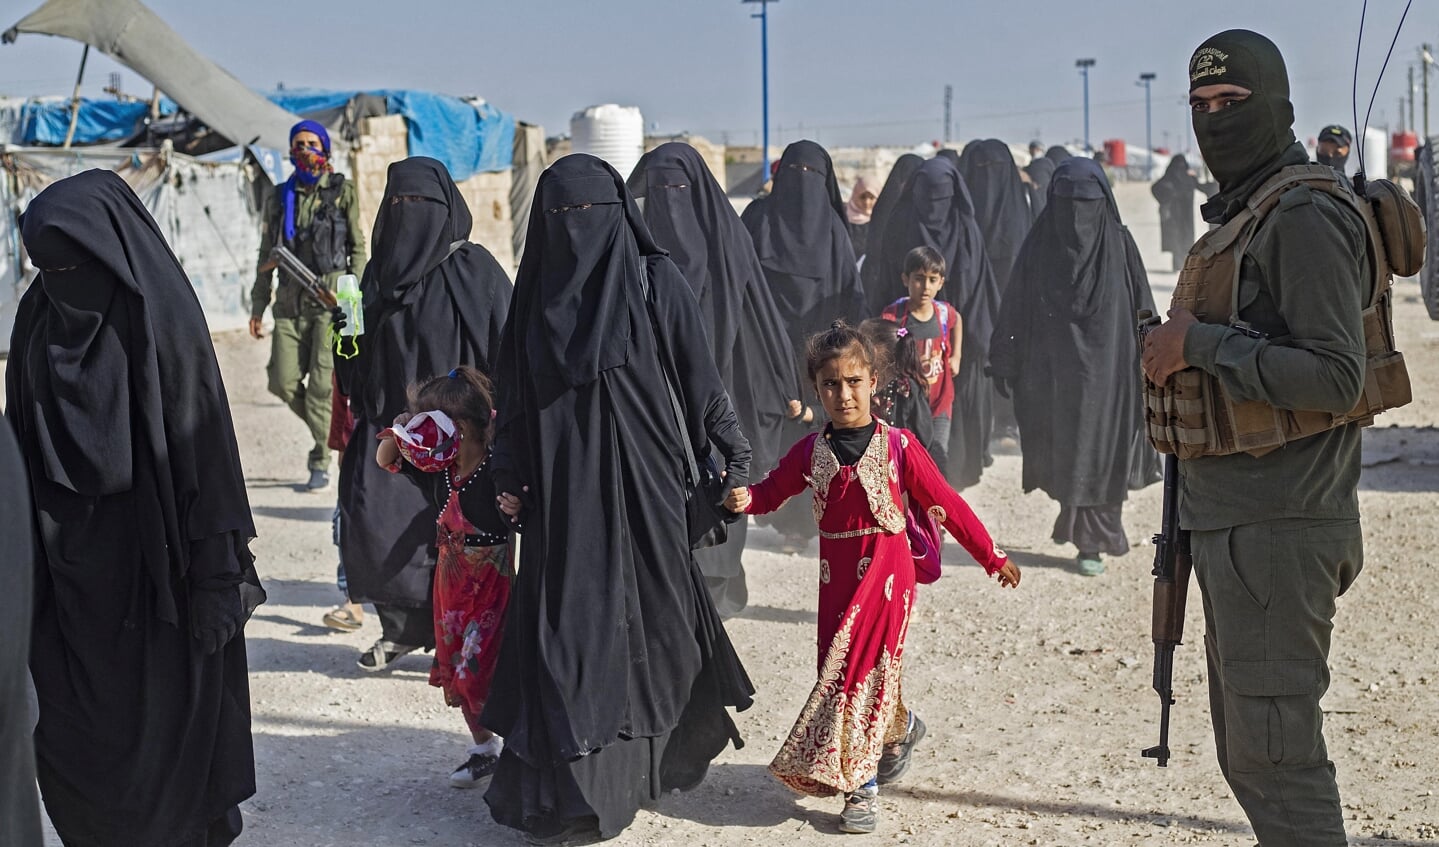 Familieleden van verdachte ISIS-strijders, vrouwen en kinderen, verblijven in het door Koerden bewaakte kamp al-Hol, in het noordoosten van Syrië.